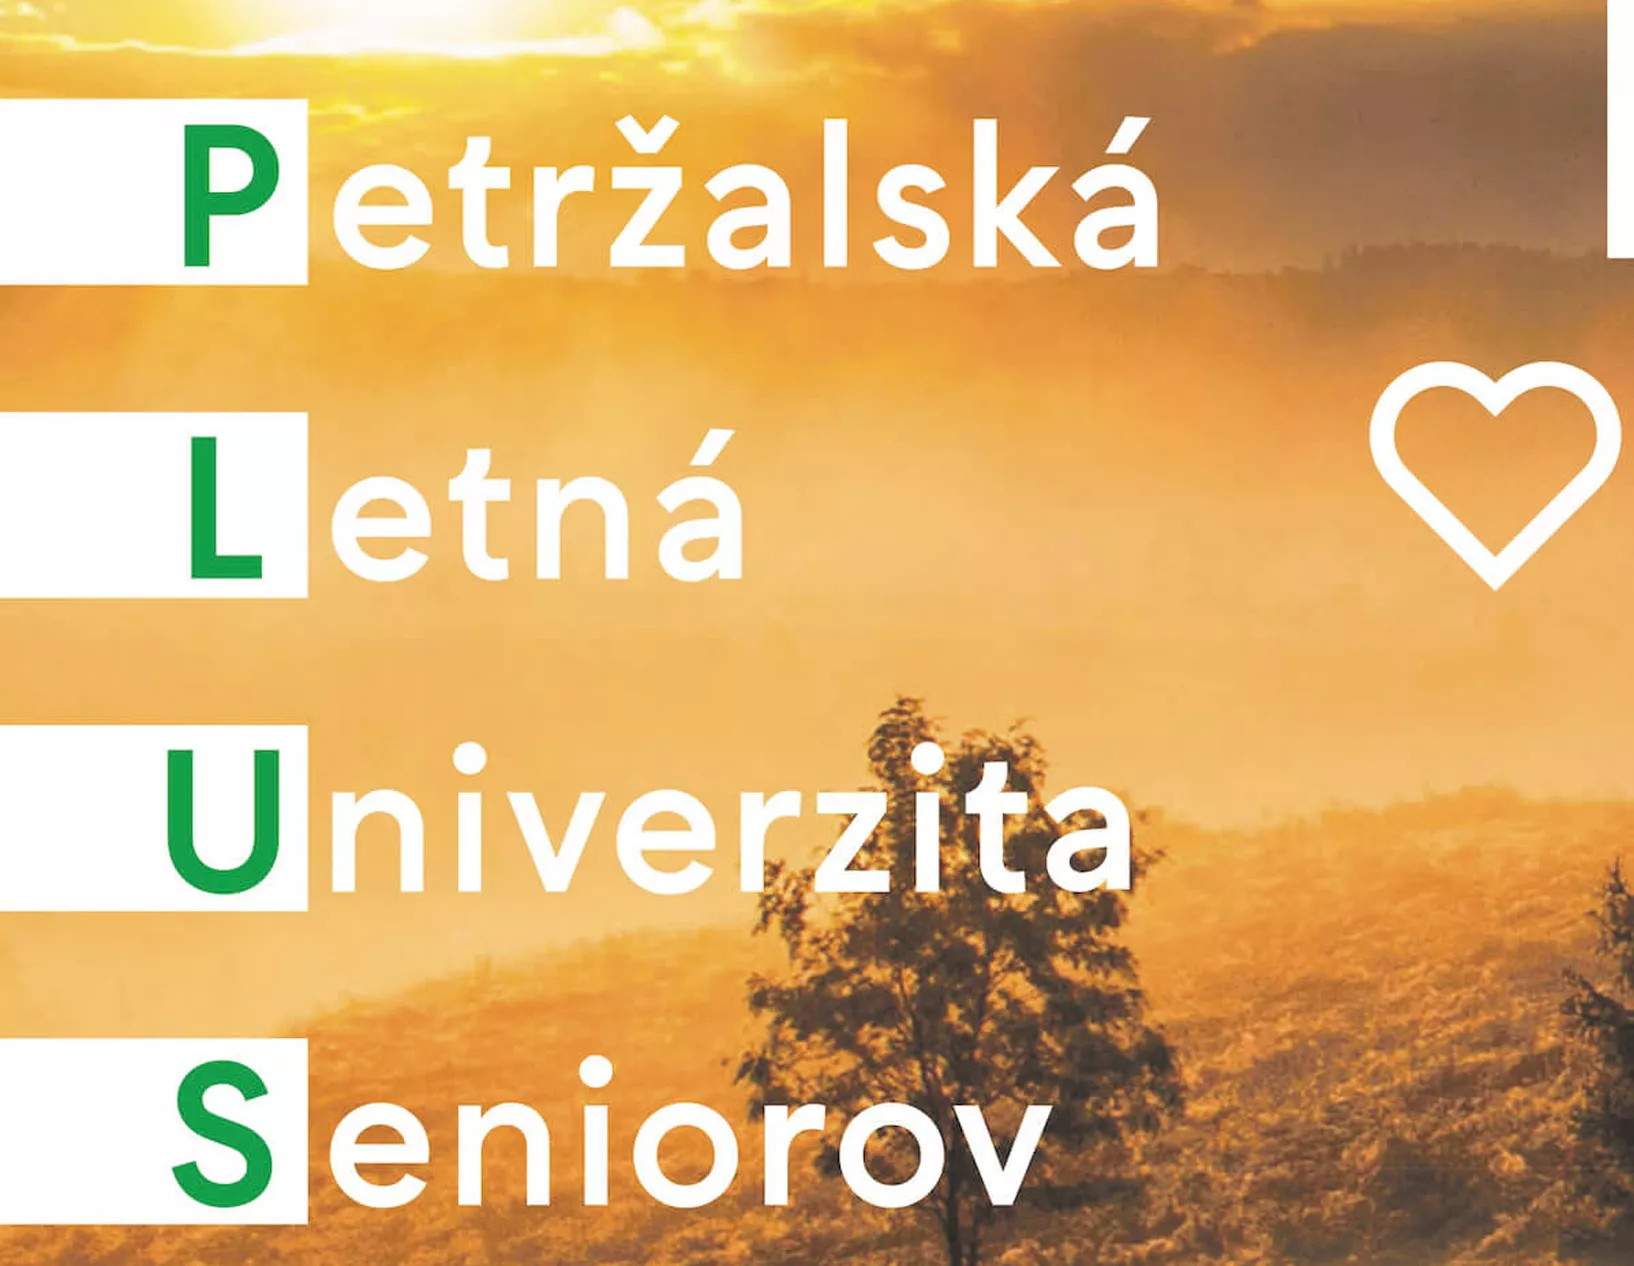 PLUS - Petržalská letná univerzita seniorov 2023 - 5. ročník